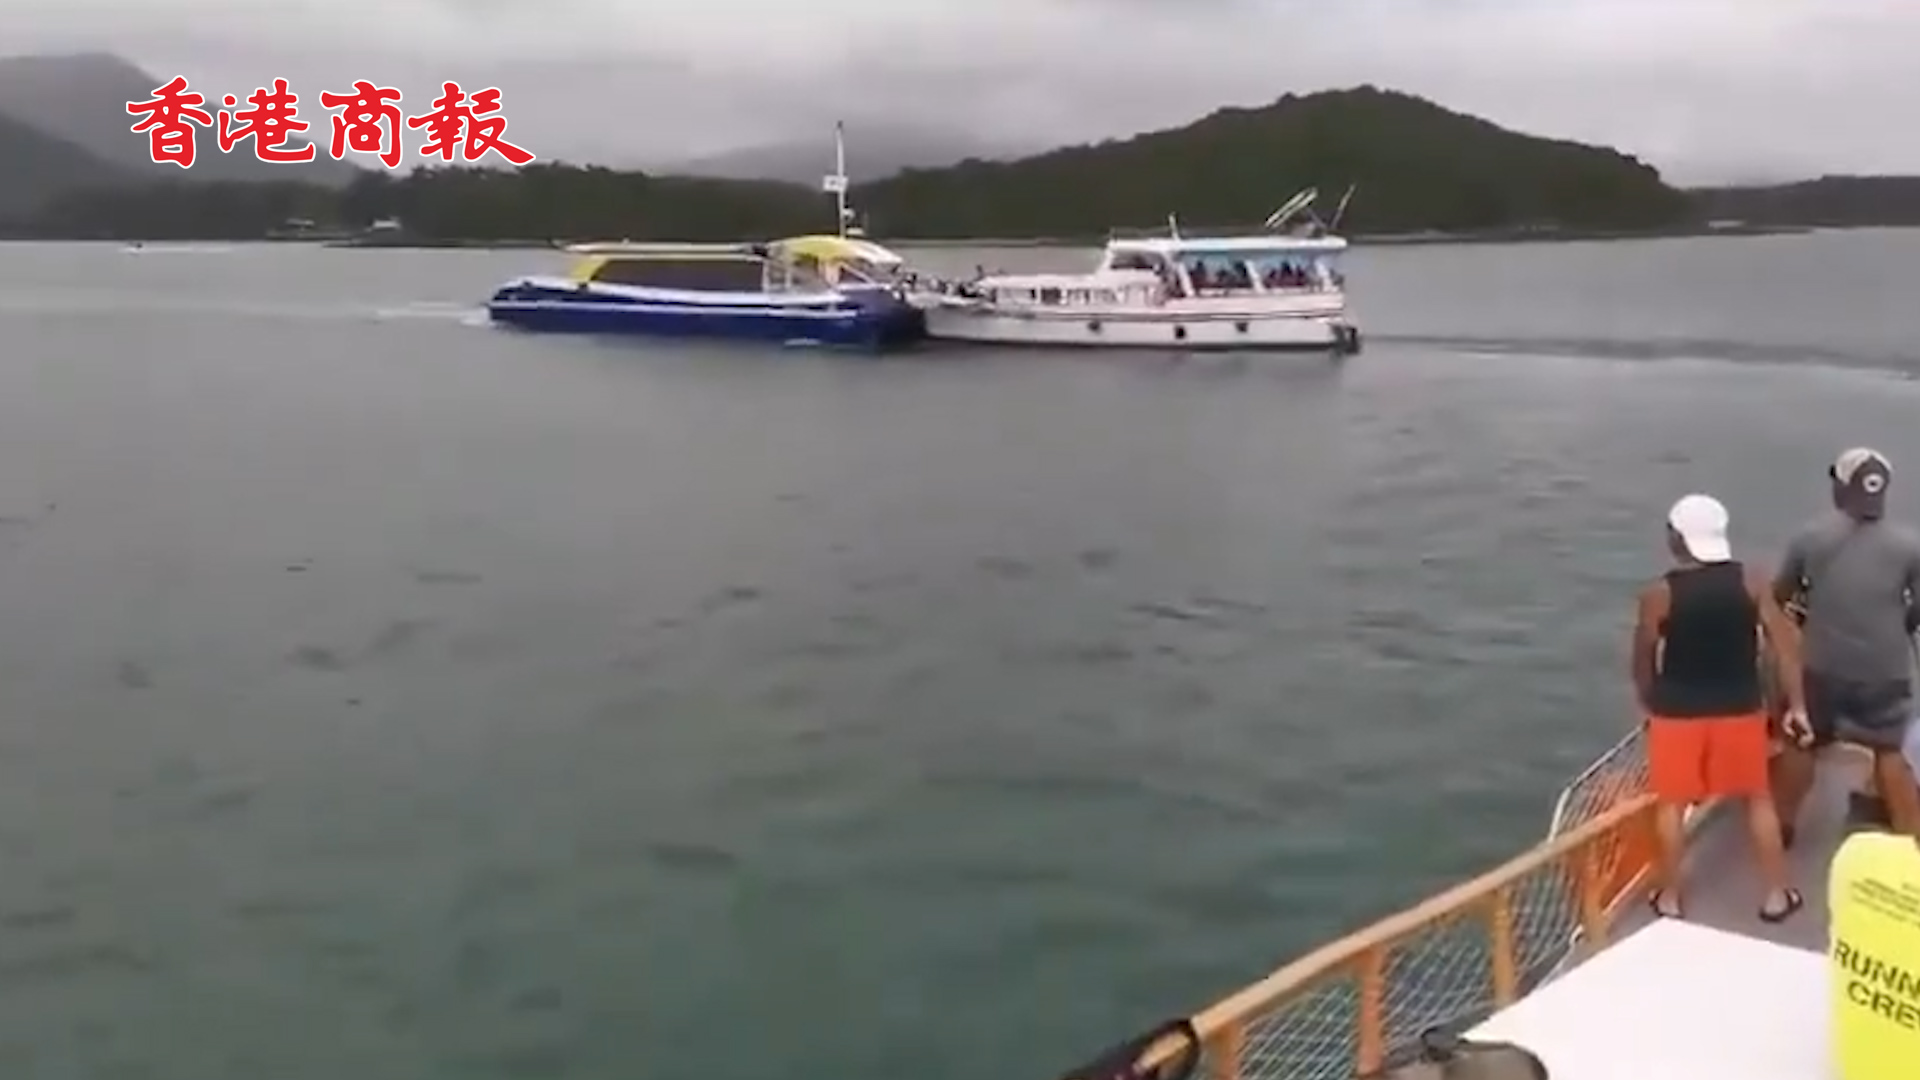 有片丨香港一渡輪與遊艇迎頭相撞 致兩人受傷